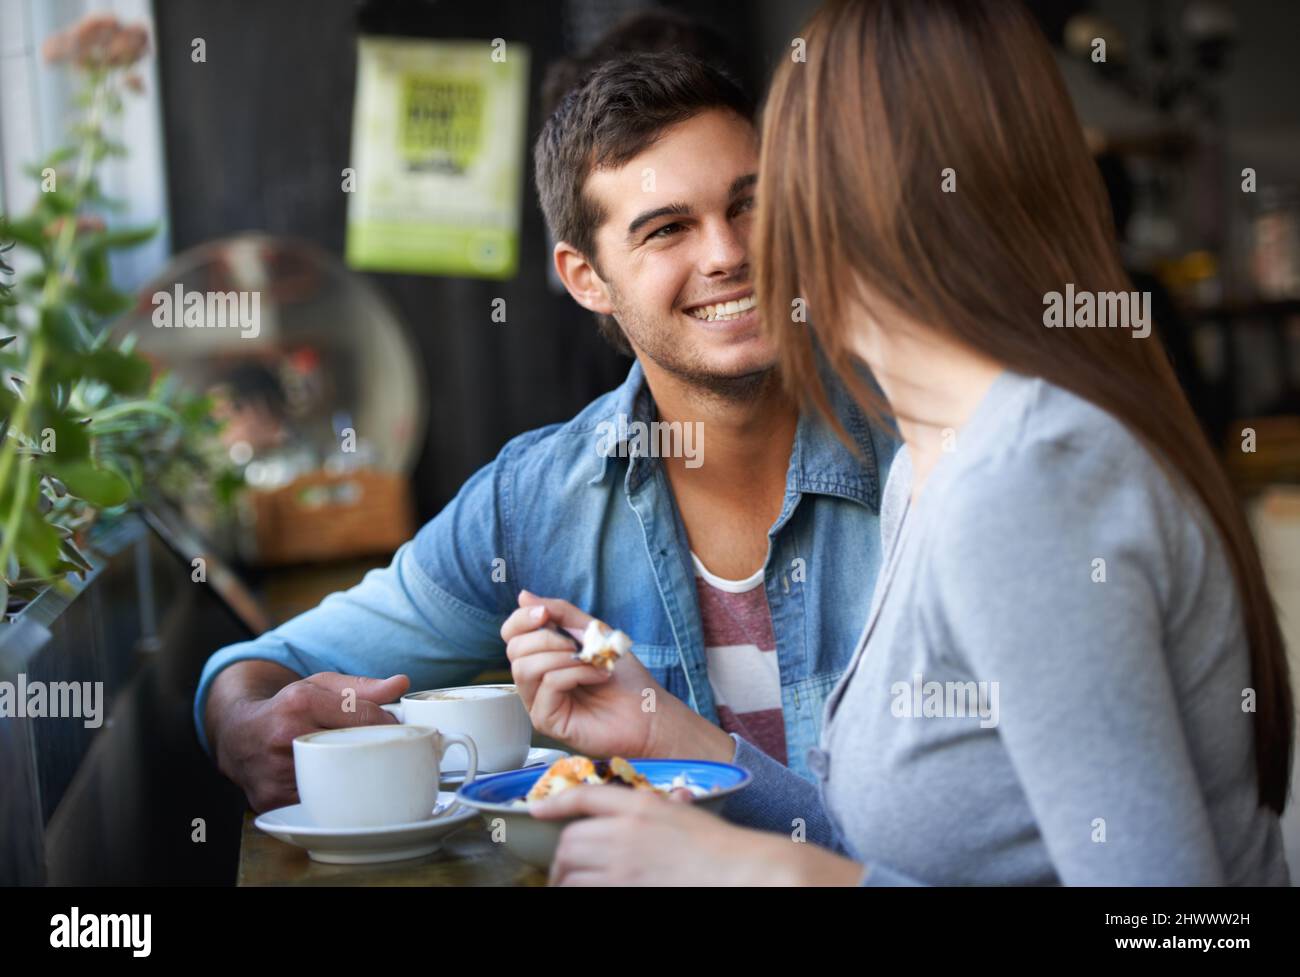 Gemeinsam den Nachmittag genießen. Aufnahme eines jungen Paares, das in einem Café spricht. Stockfoto